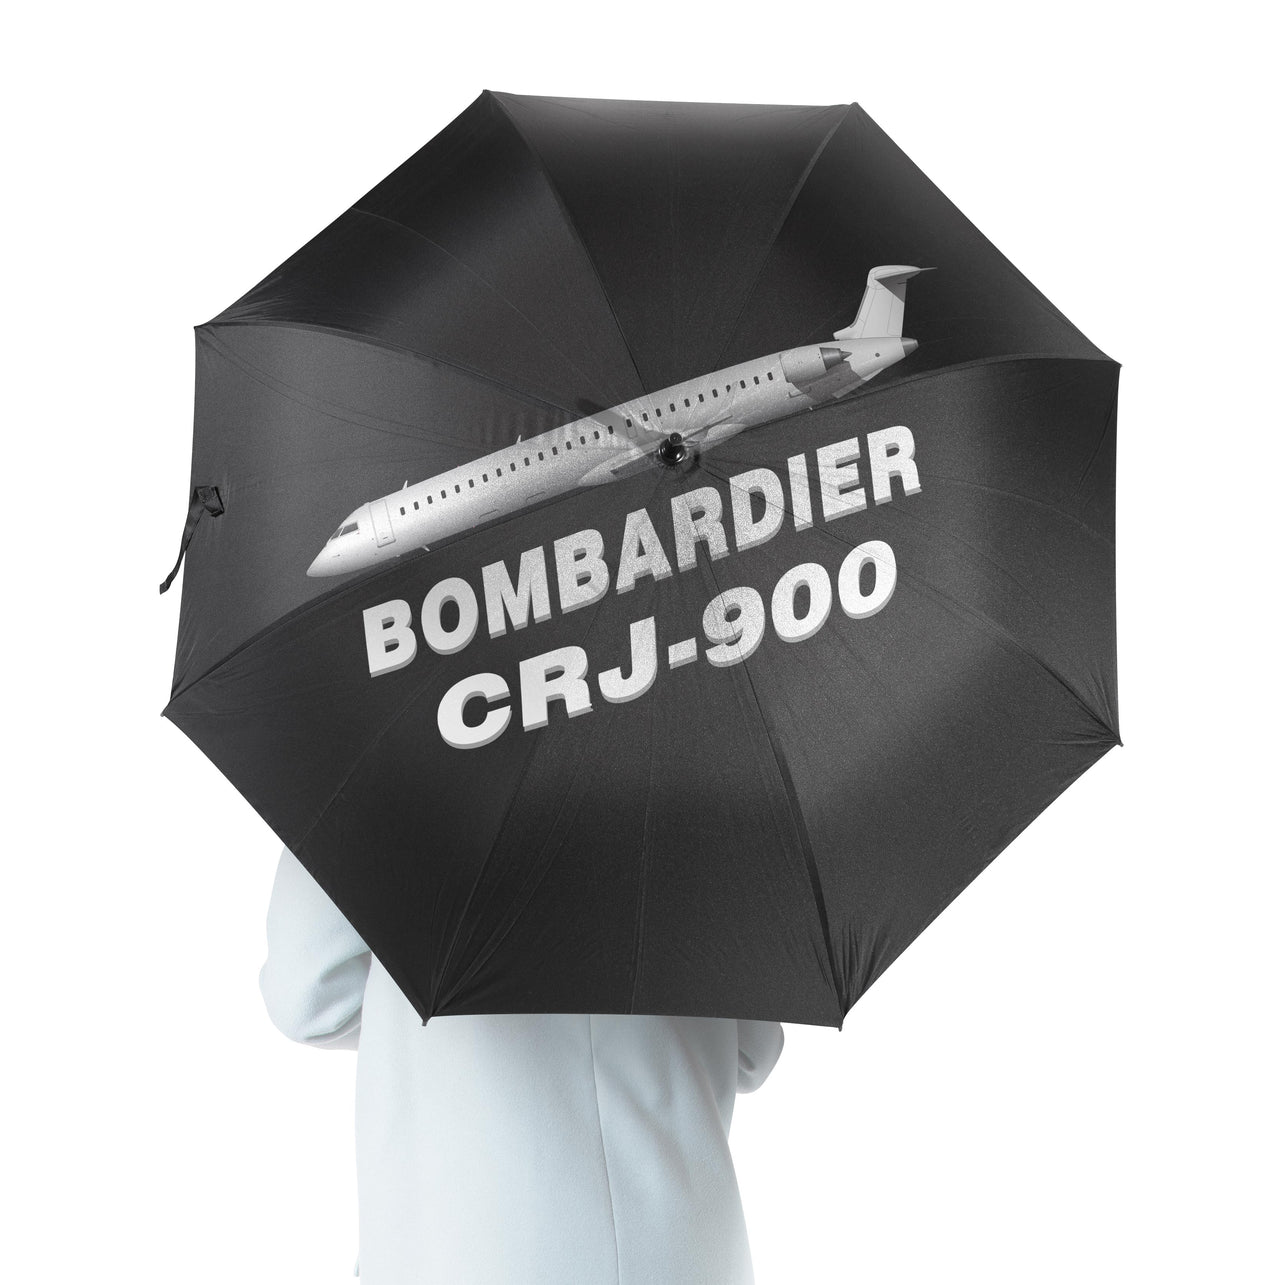 Bombardier CRJ-900 Designed Umbrella